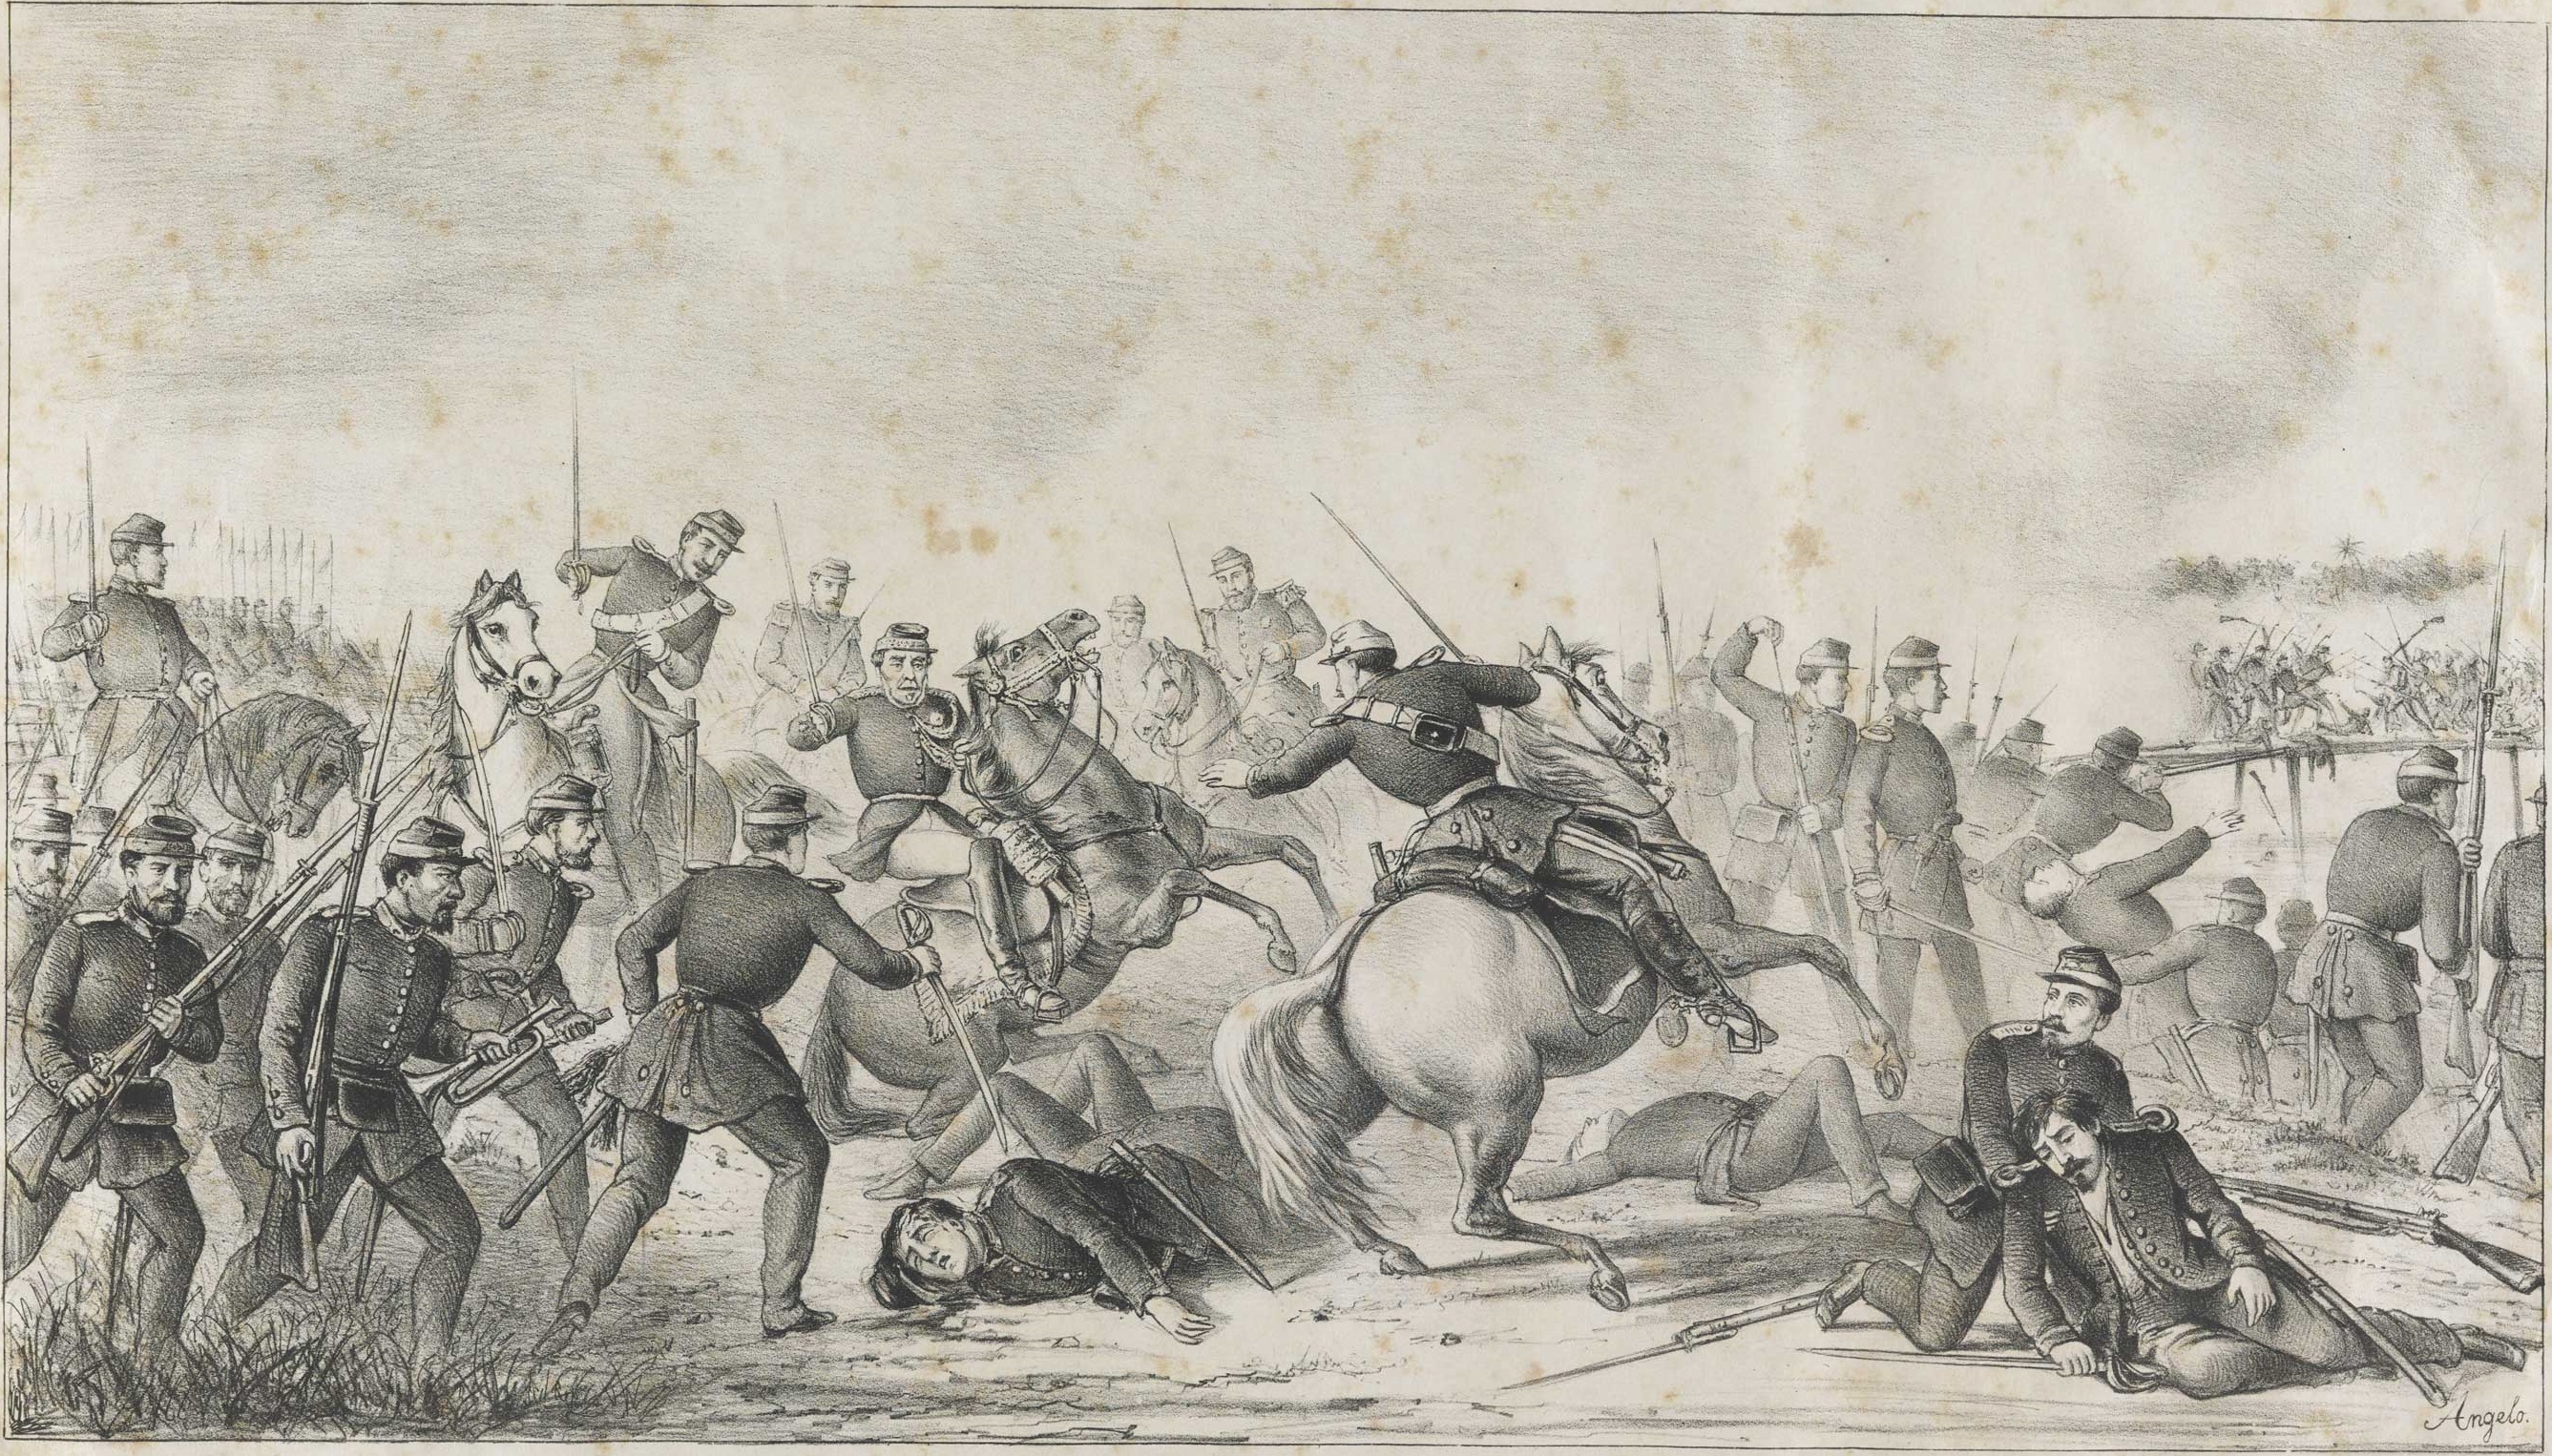 GUERRA DO PARAGUAY Episodio da passagem e tomada da ponte sobre o arroio Itorr no dia 6 de Dezembro de 1868